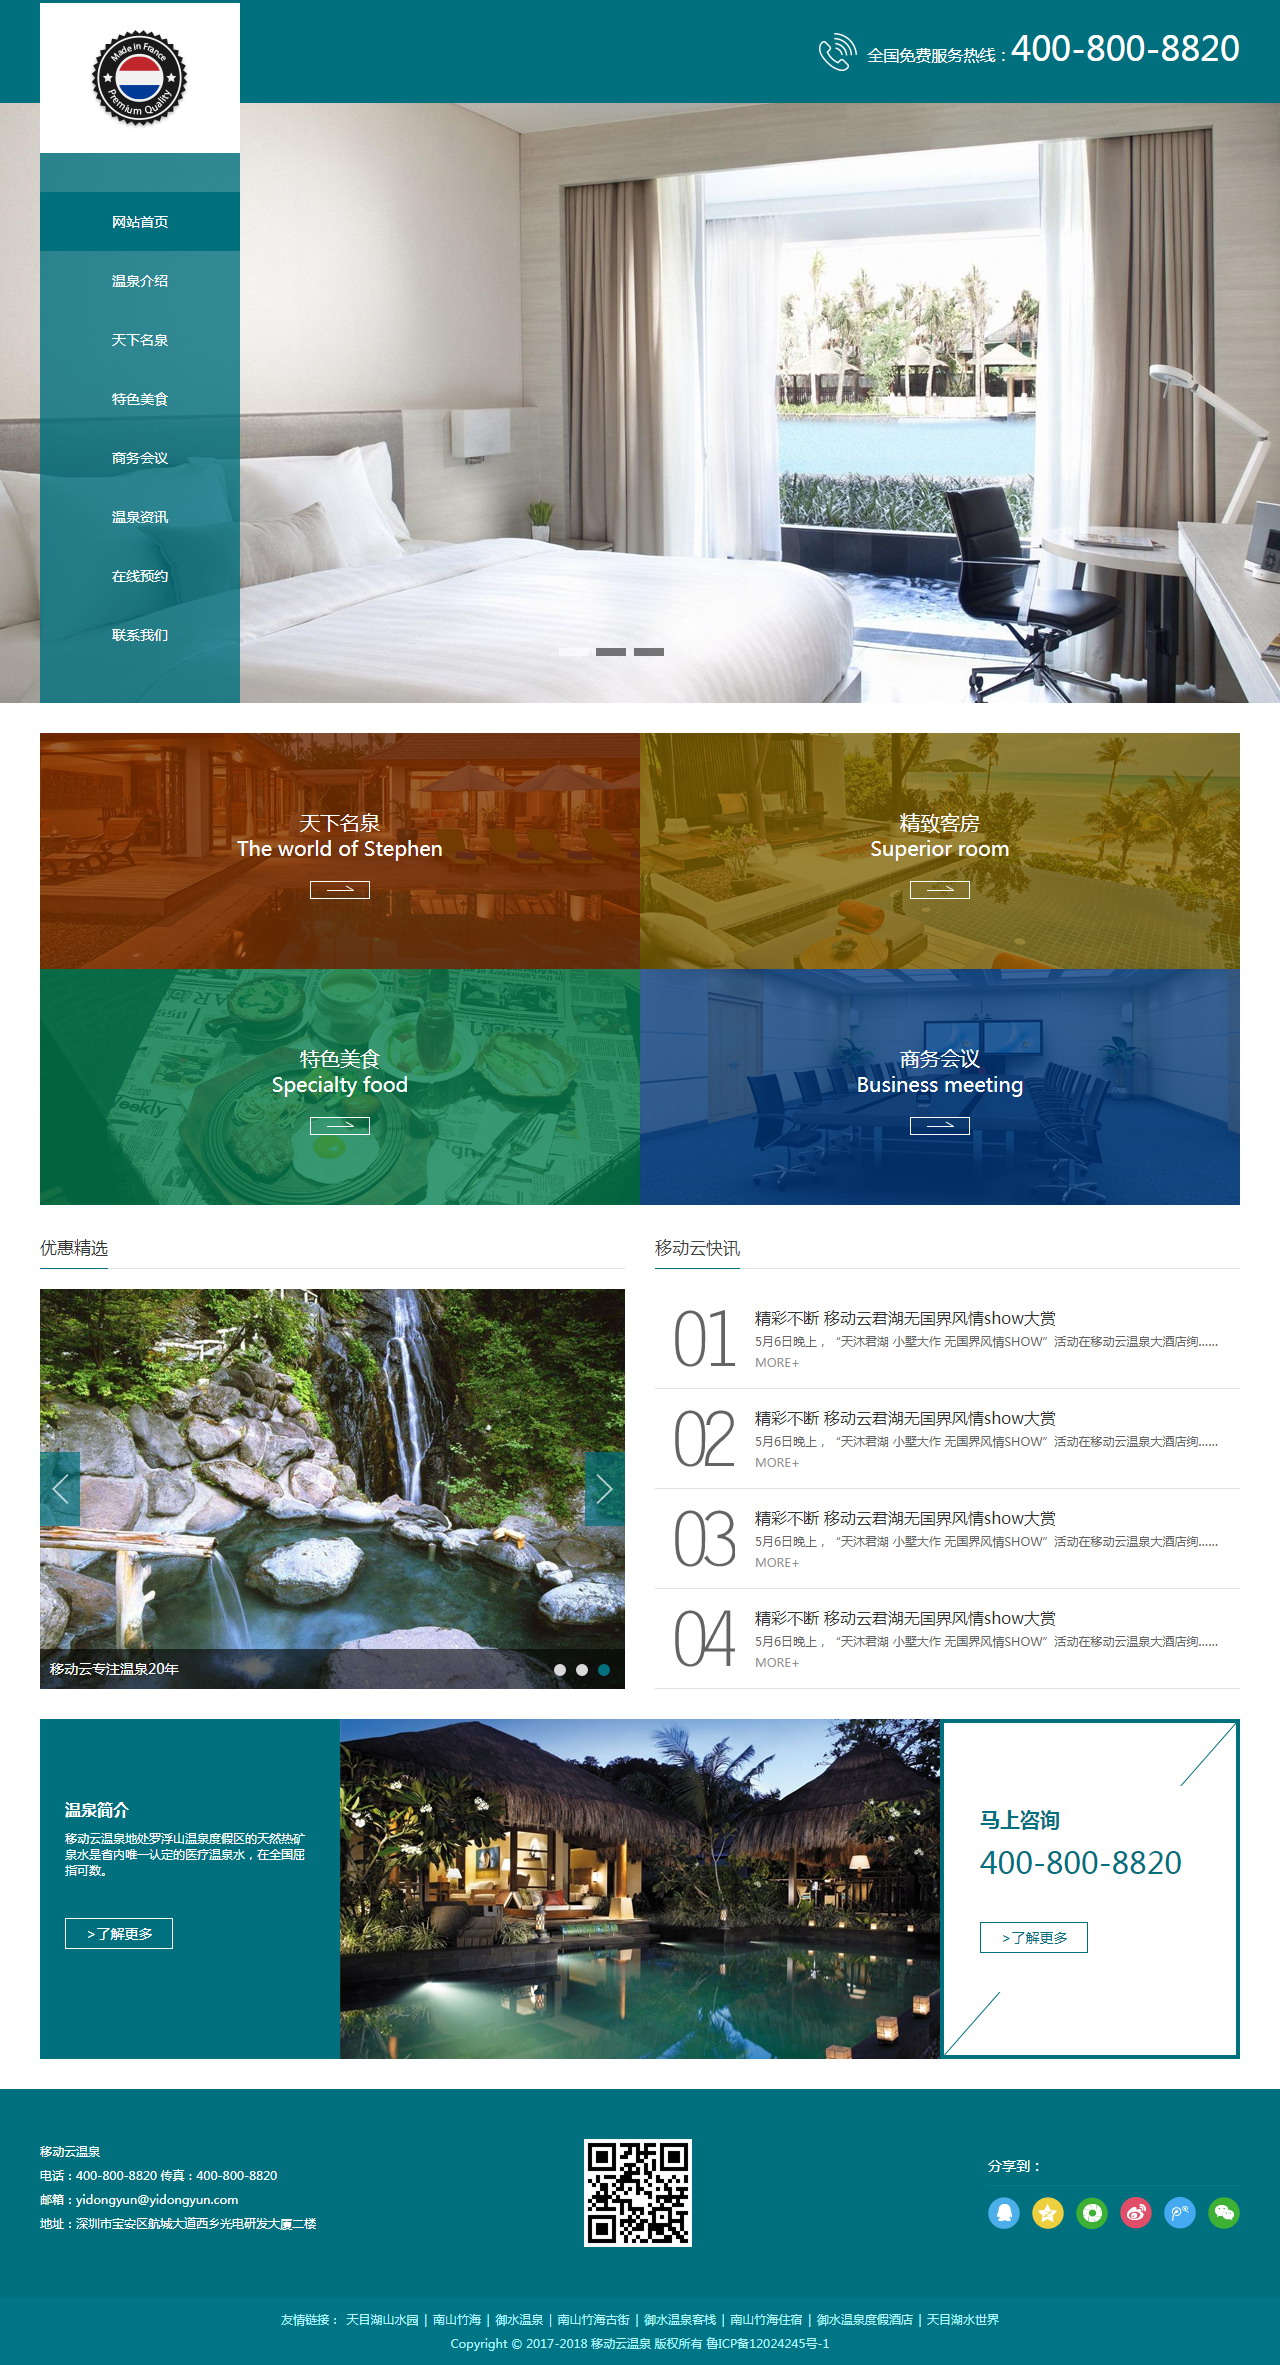 景区酒店温泉休闲度假网站 毕业设计 课程设计